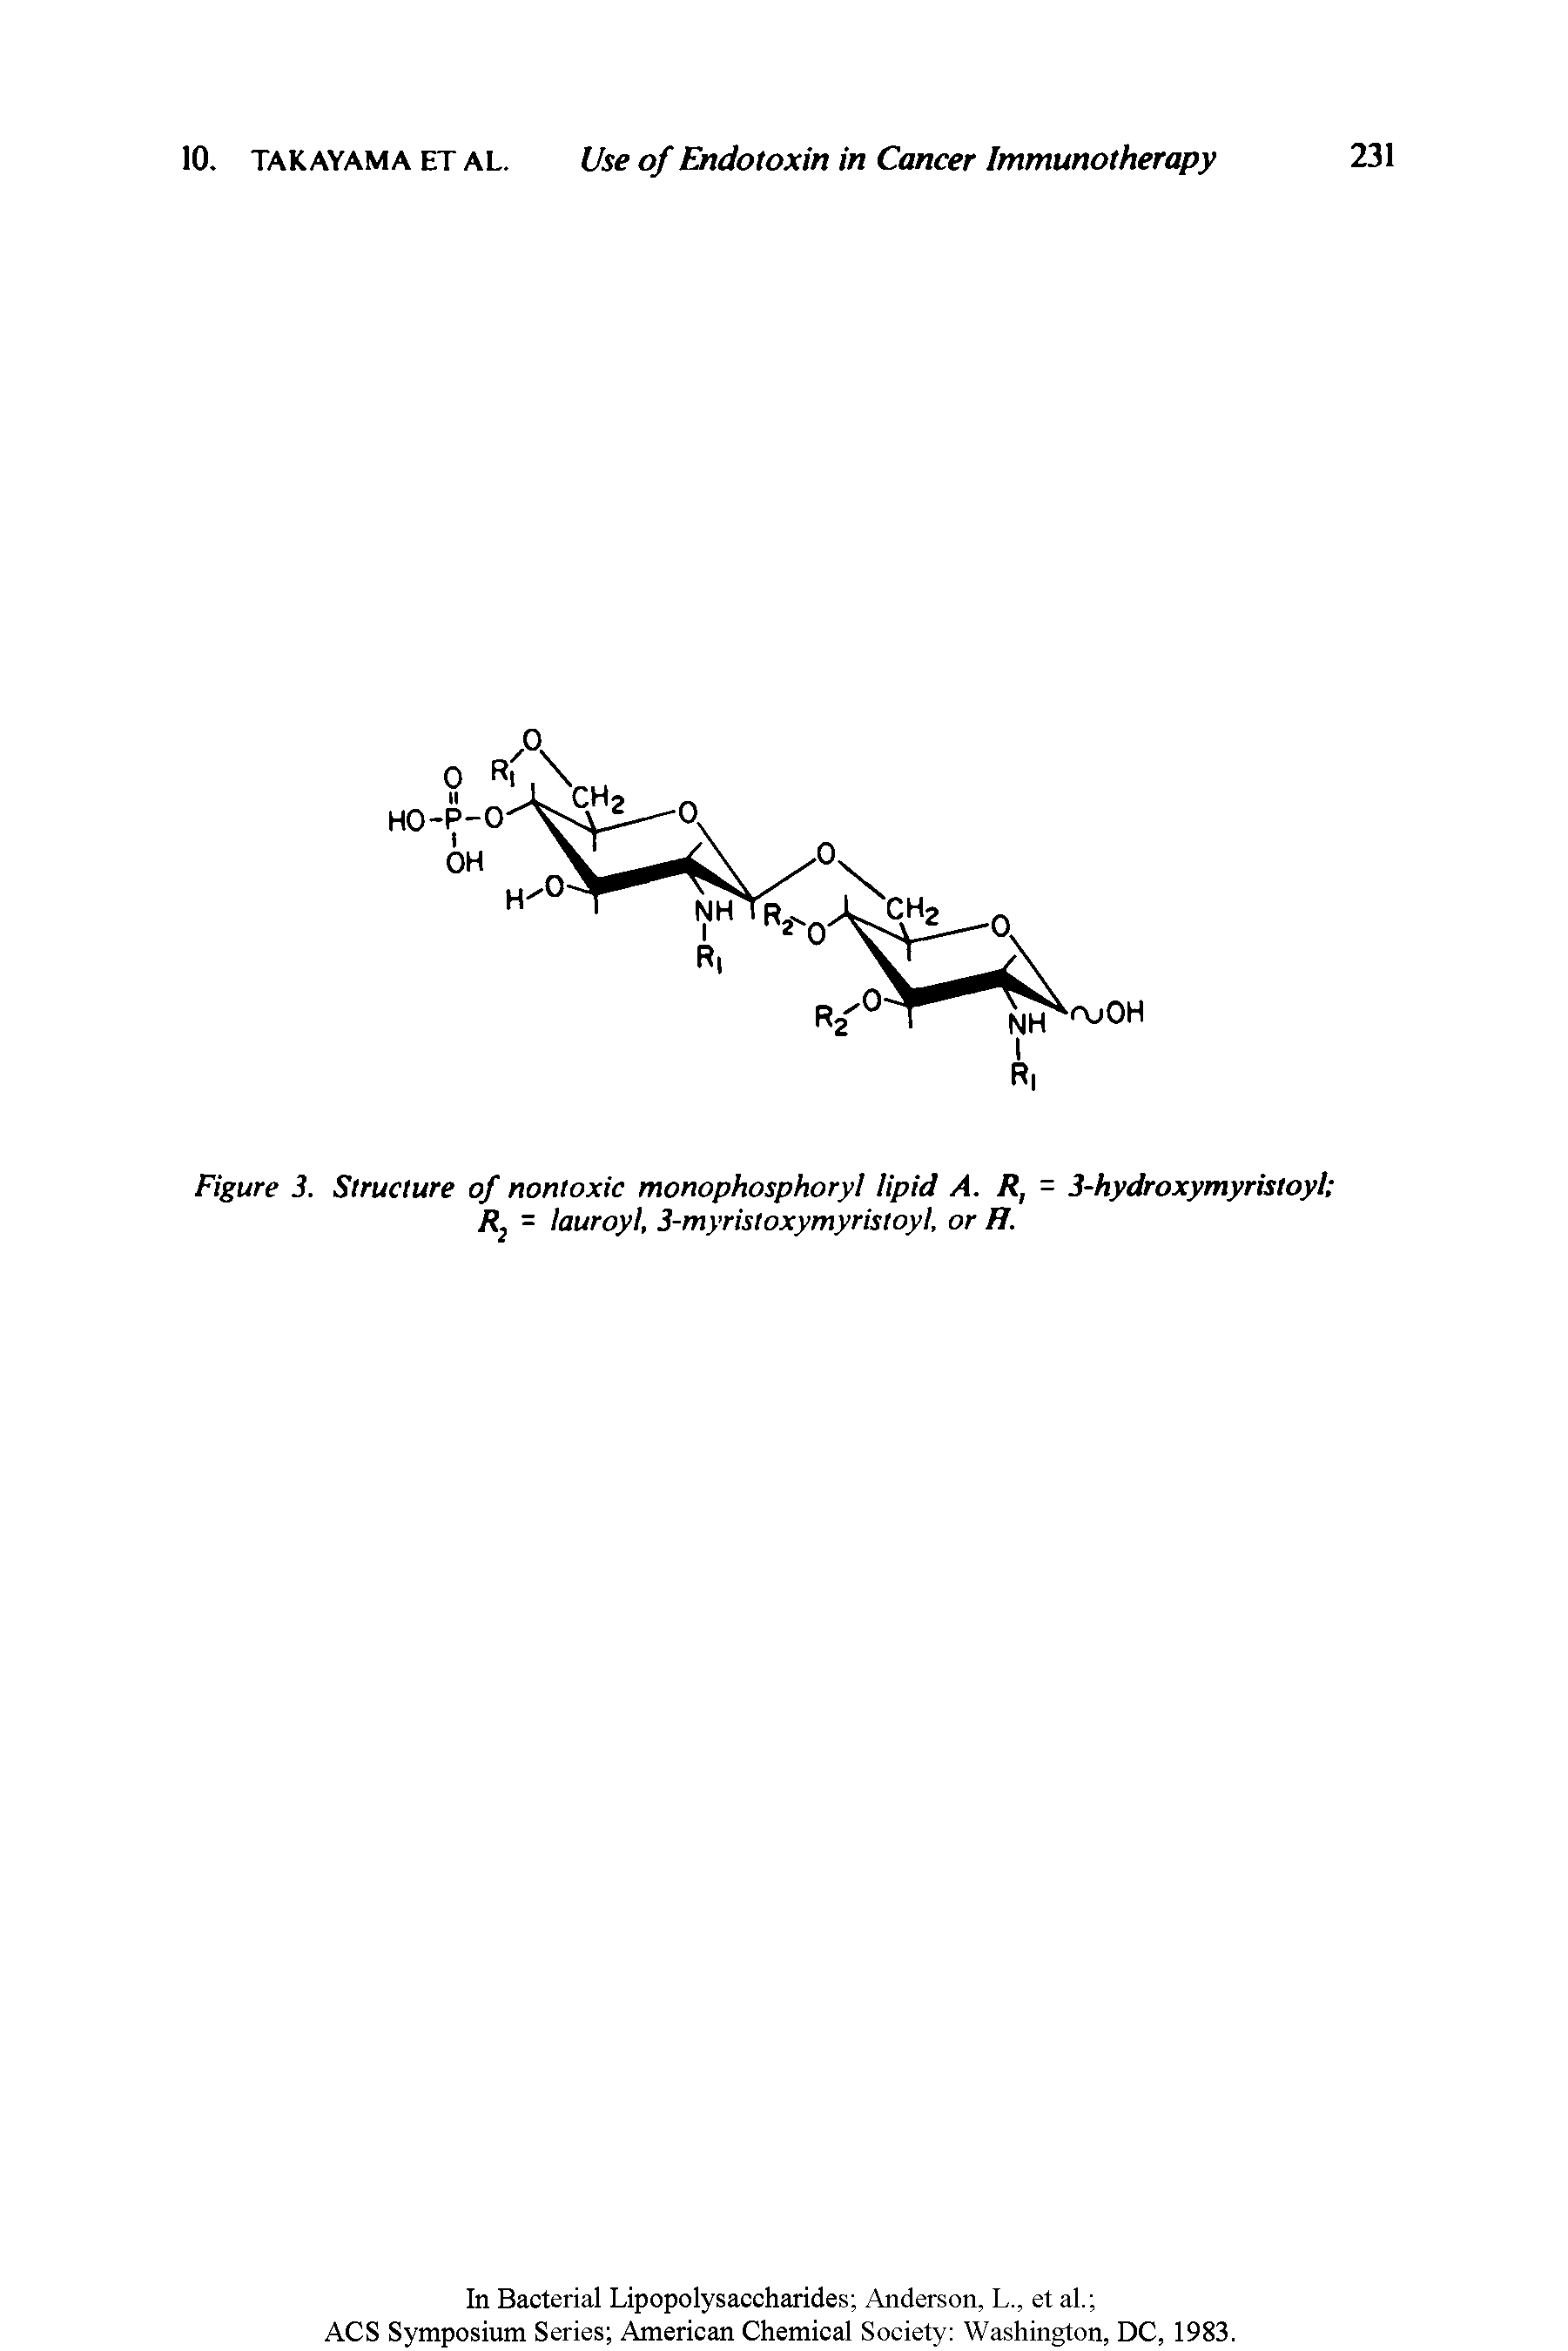 Figure 3. Structure of nontoxic monophosphoryl lipid A. R, = 3-hydroxymyristoyl R2 = lauroyl, 3-myristoxymyristoyl, or H.